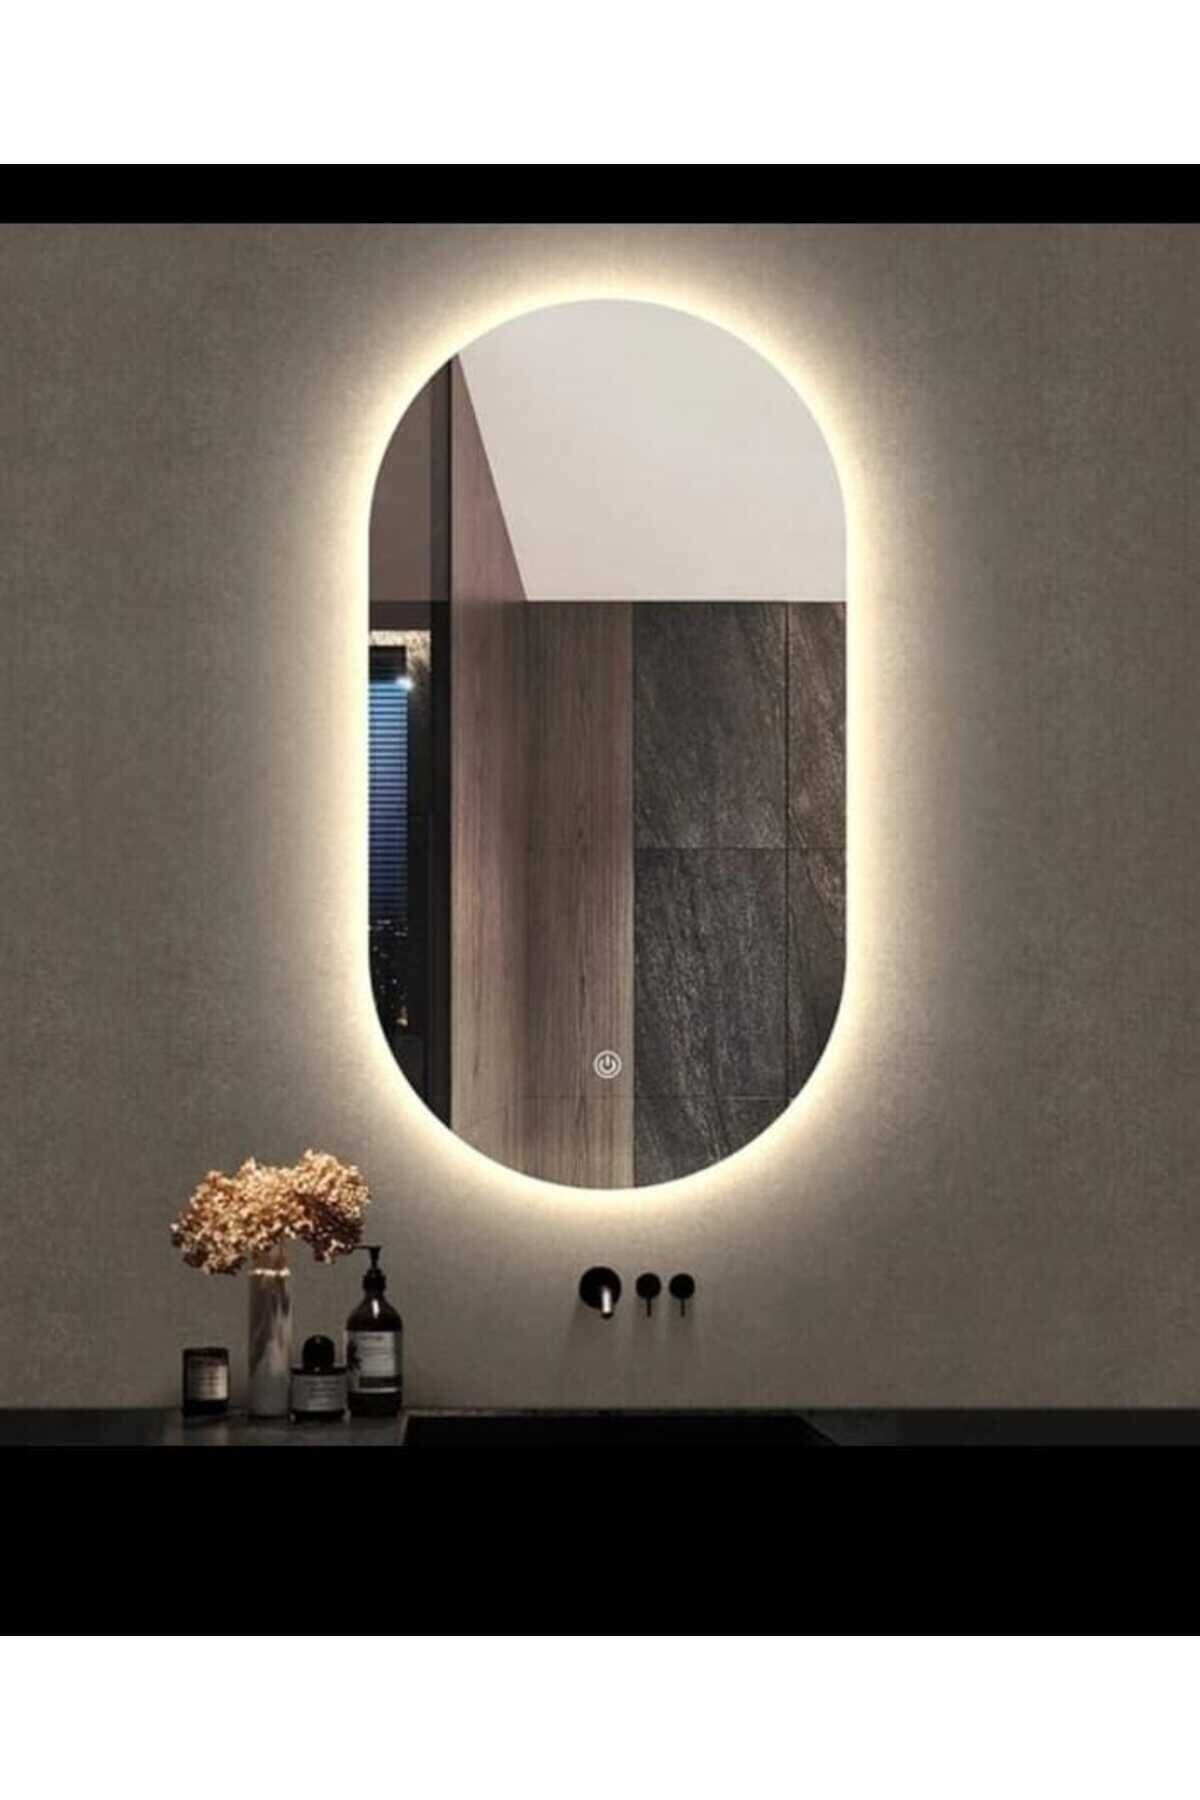 Toprak dekor Ledli Banyo Aynası Dokunmatik (DİMMER ÖZELLİKLİ)oval Banyo Aynası Işıklı Makyaj Aynası 70*50 Ölçüde